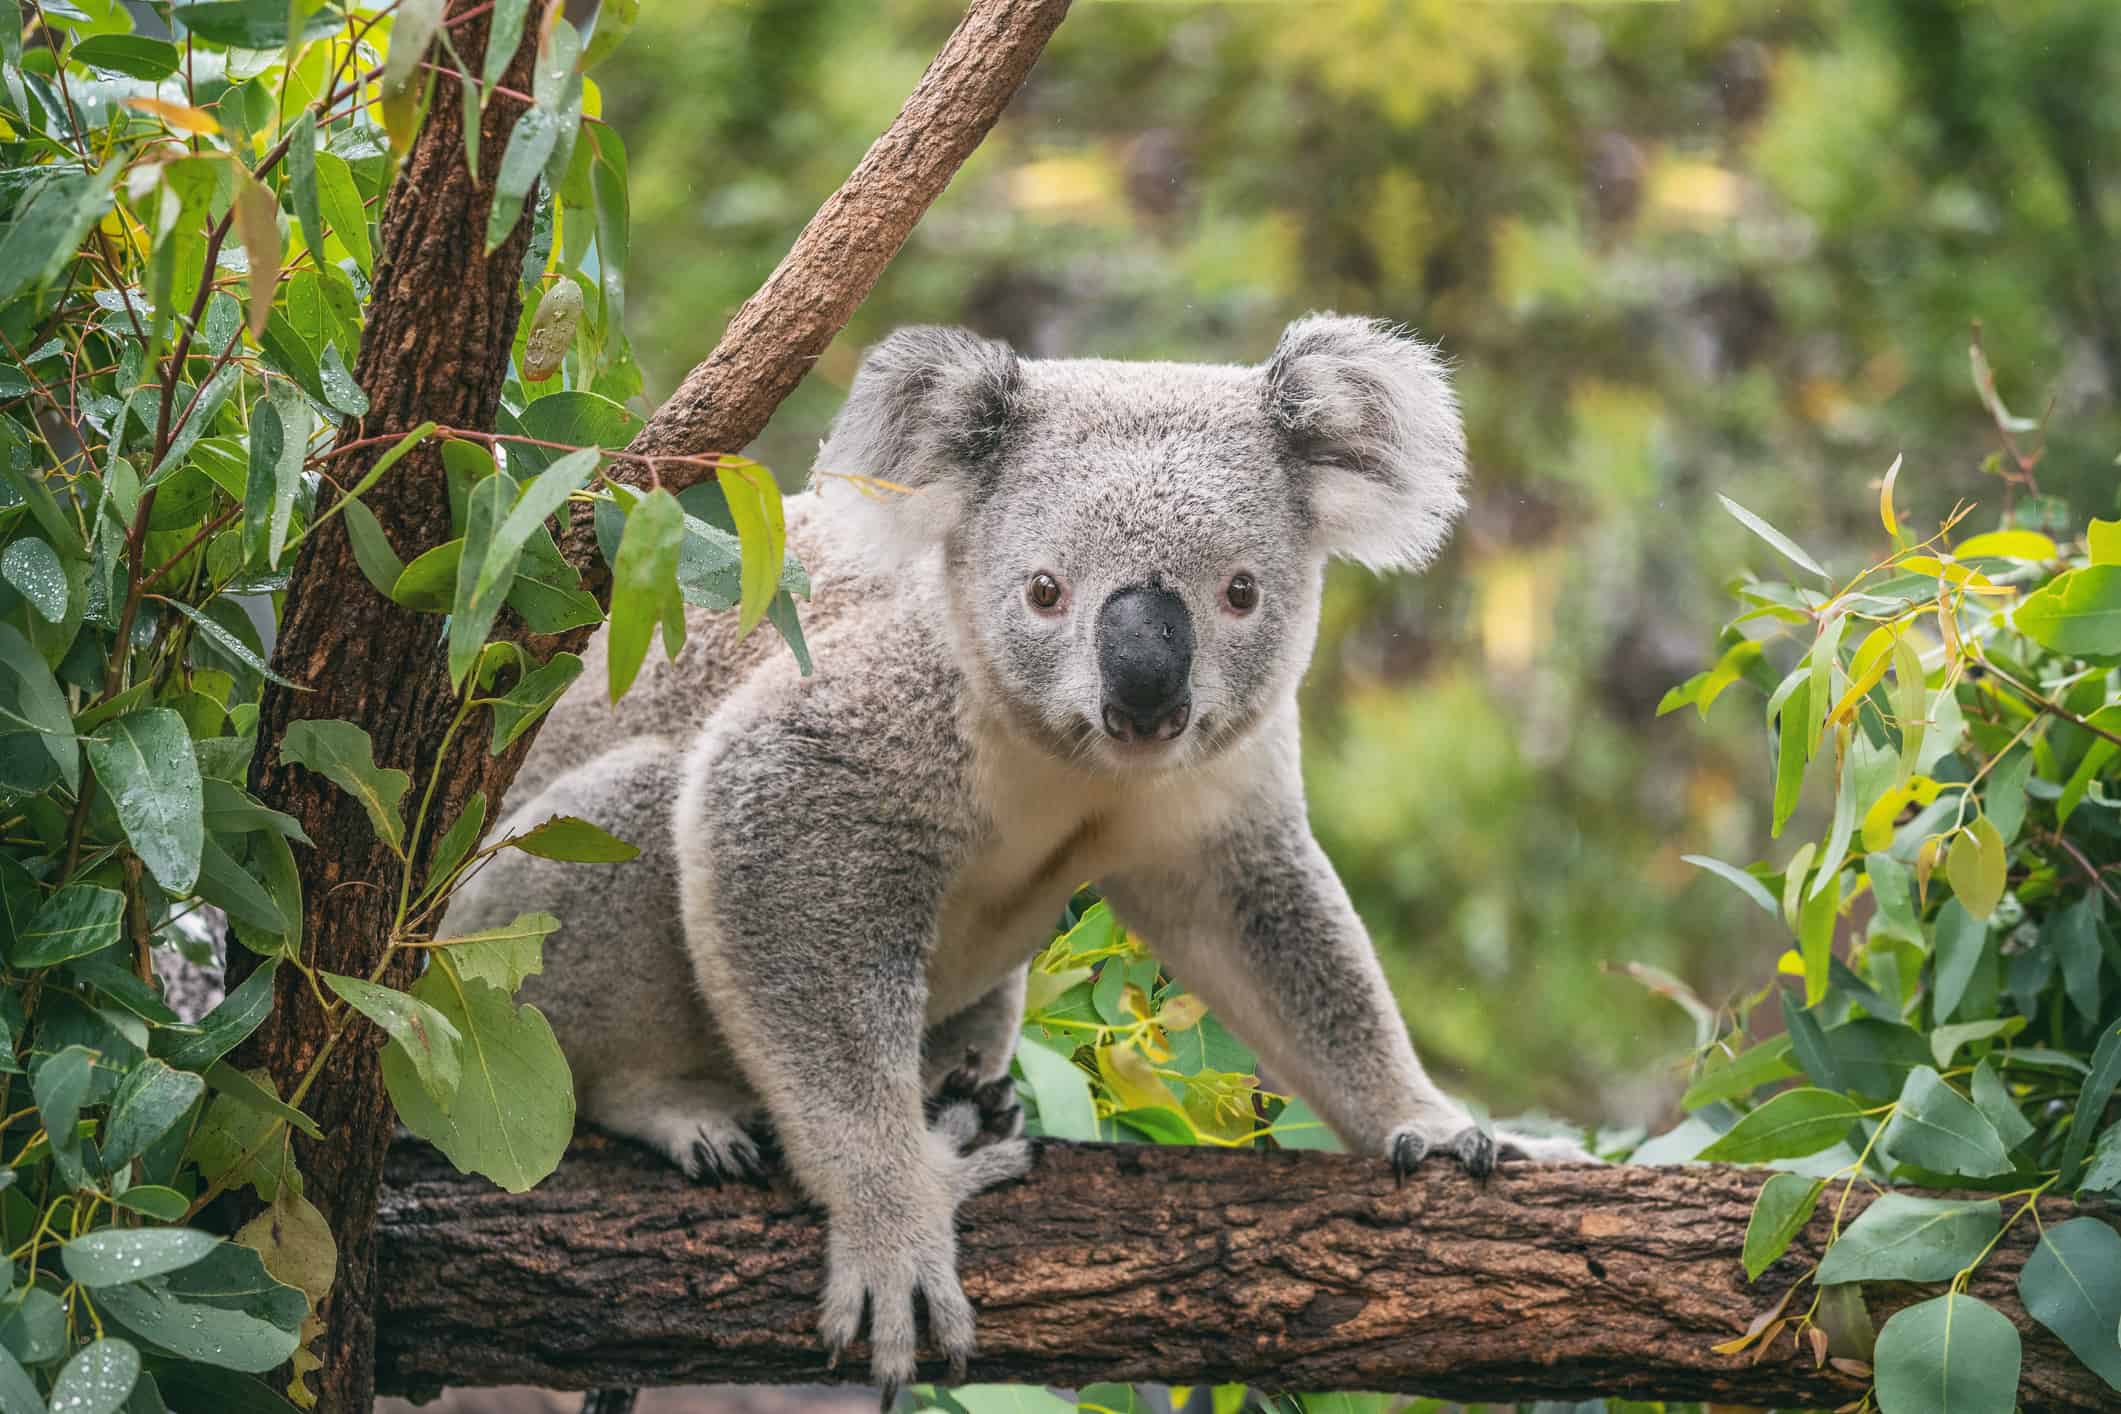 Koala Spirit Animal Symbolism and Meaning